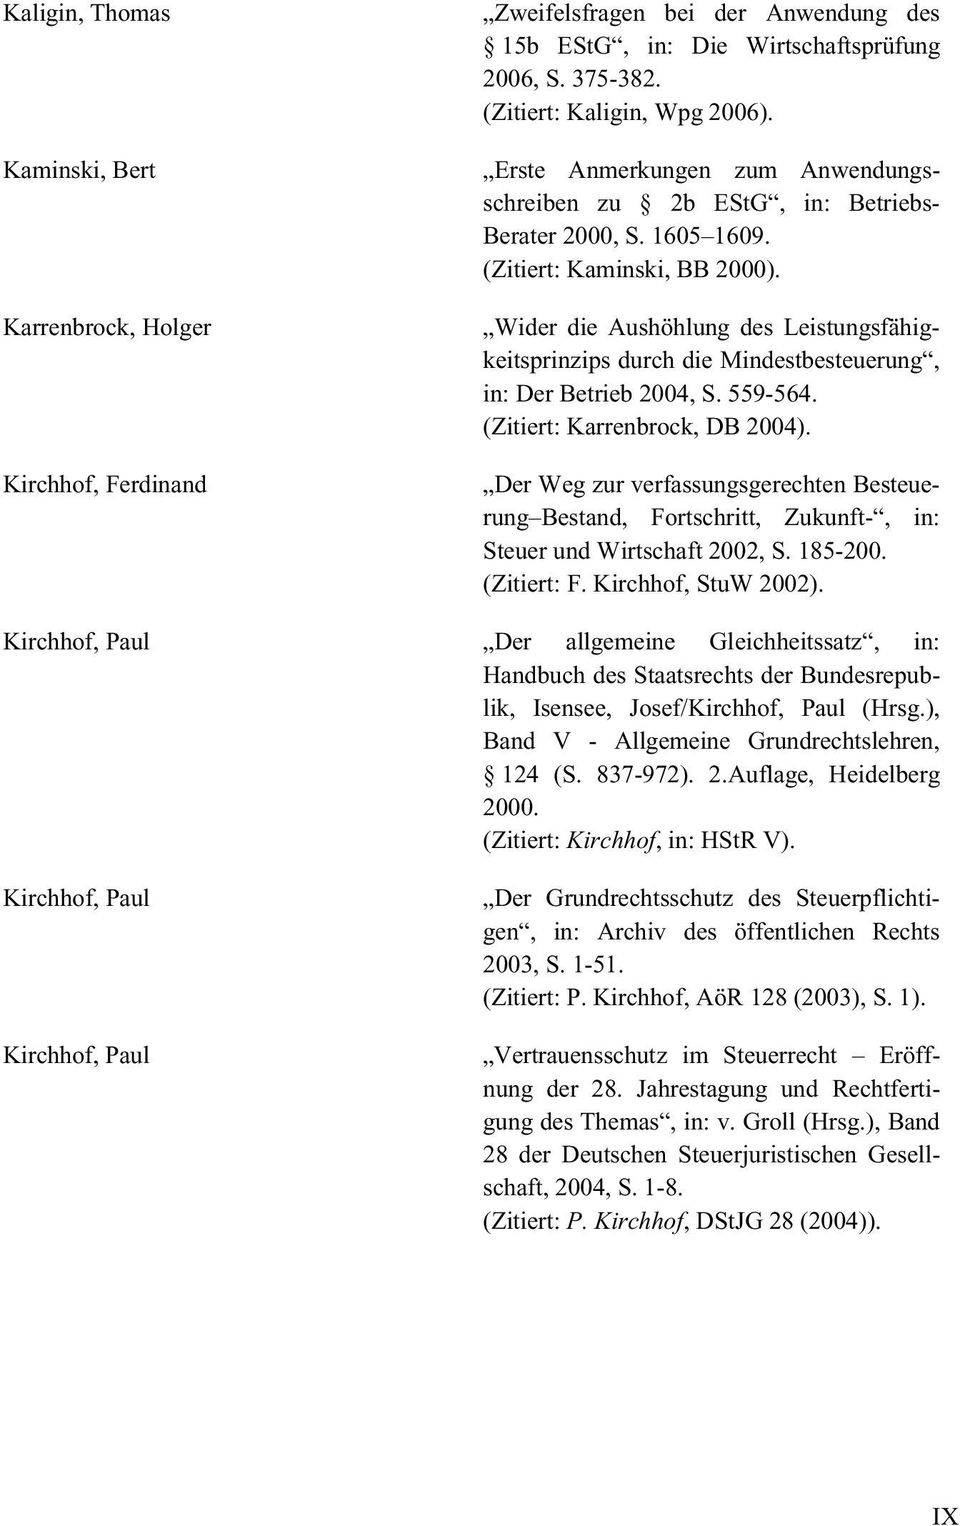 Wider die Aushöhlung des Leistungsfähigkeitsprinzips durch die Mindestbesteuerung, in: Der Betrieb 2004, S. 559-564. (Zitiert: Karrenbrock, DB 2004).